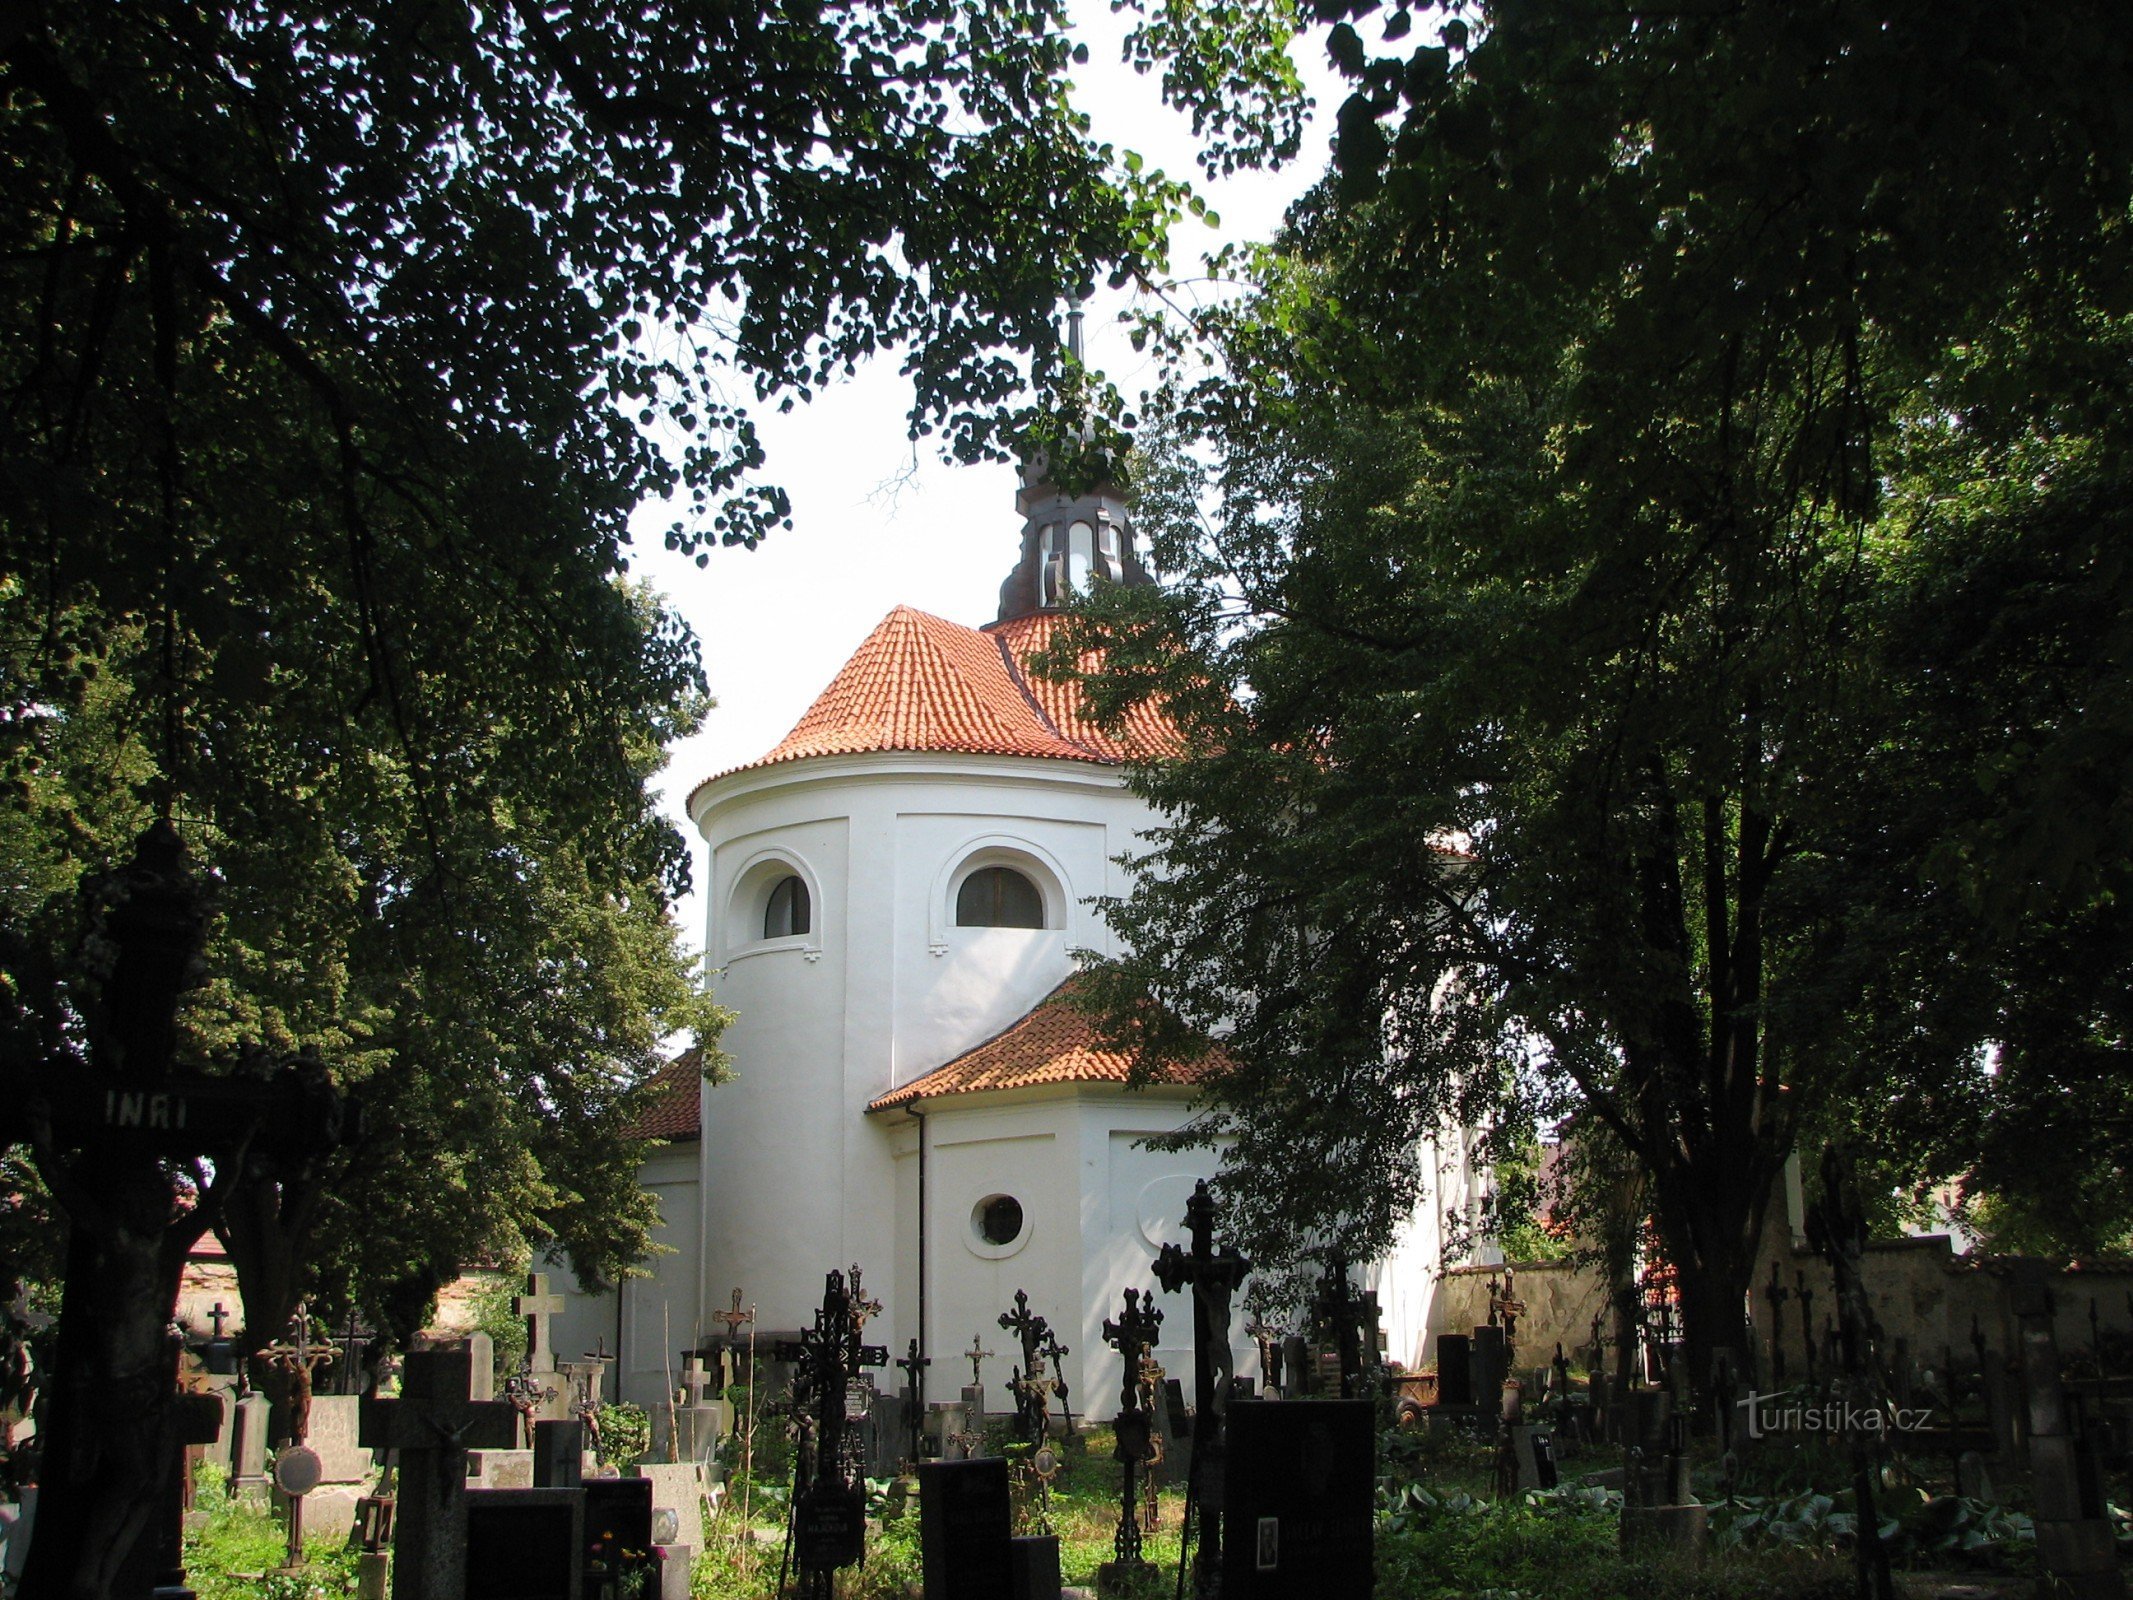 De oude begraafplaats in Bechyn op de achtergrond met de kerk van St. Michael